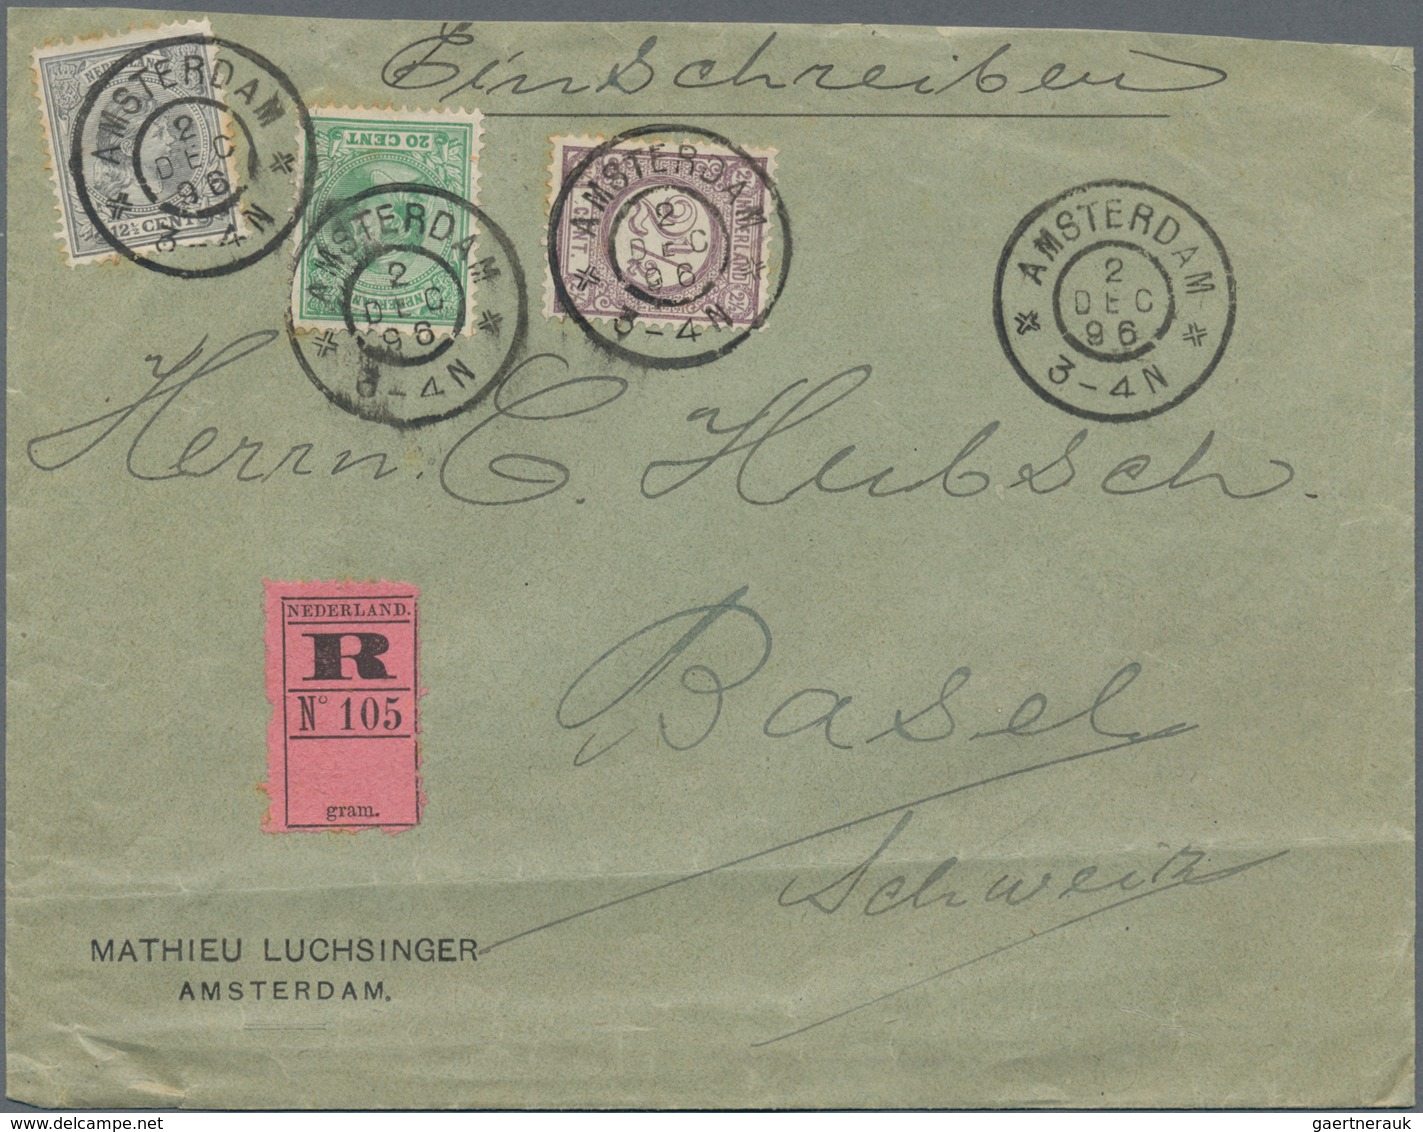 Niederlande: 1870-1960, schöner Bestand mit geschätzt 6-700 Briefen, Belegen, FDC und Ganzsachen, da